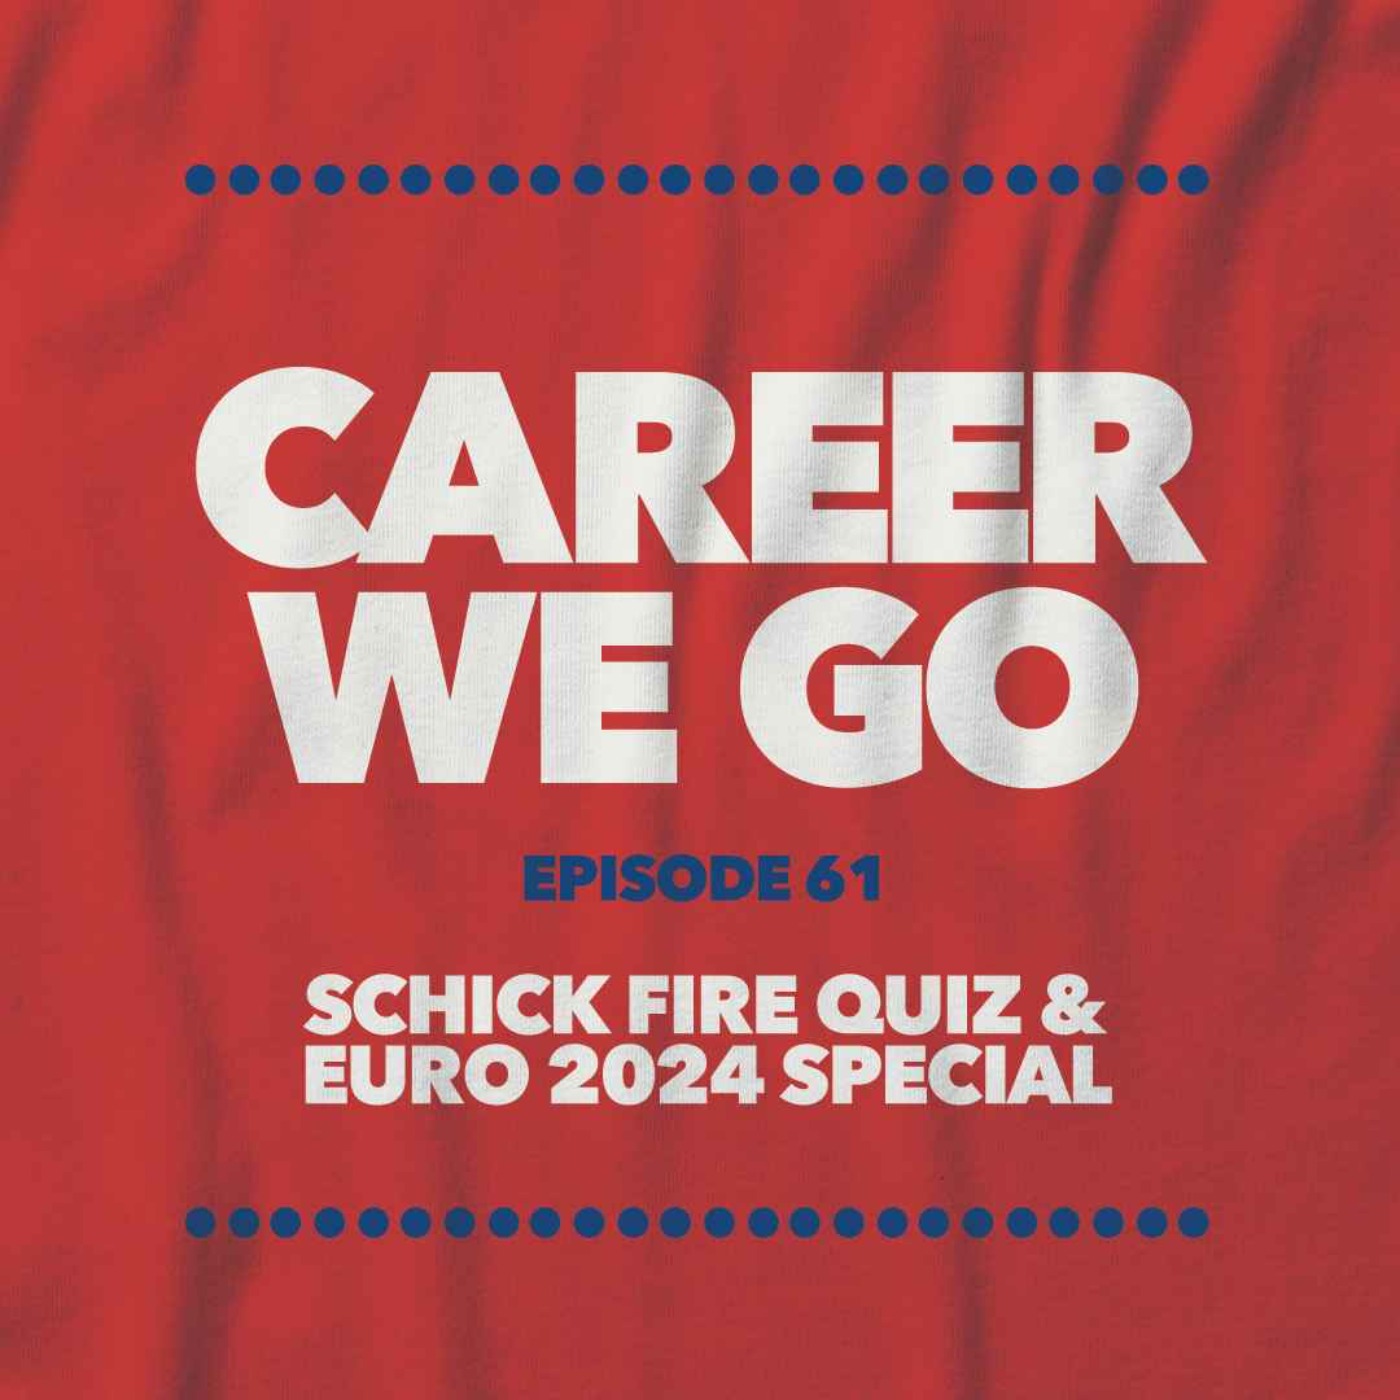 EURO 2024 Special & Schick Fire Quiz